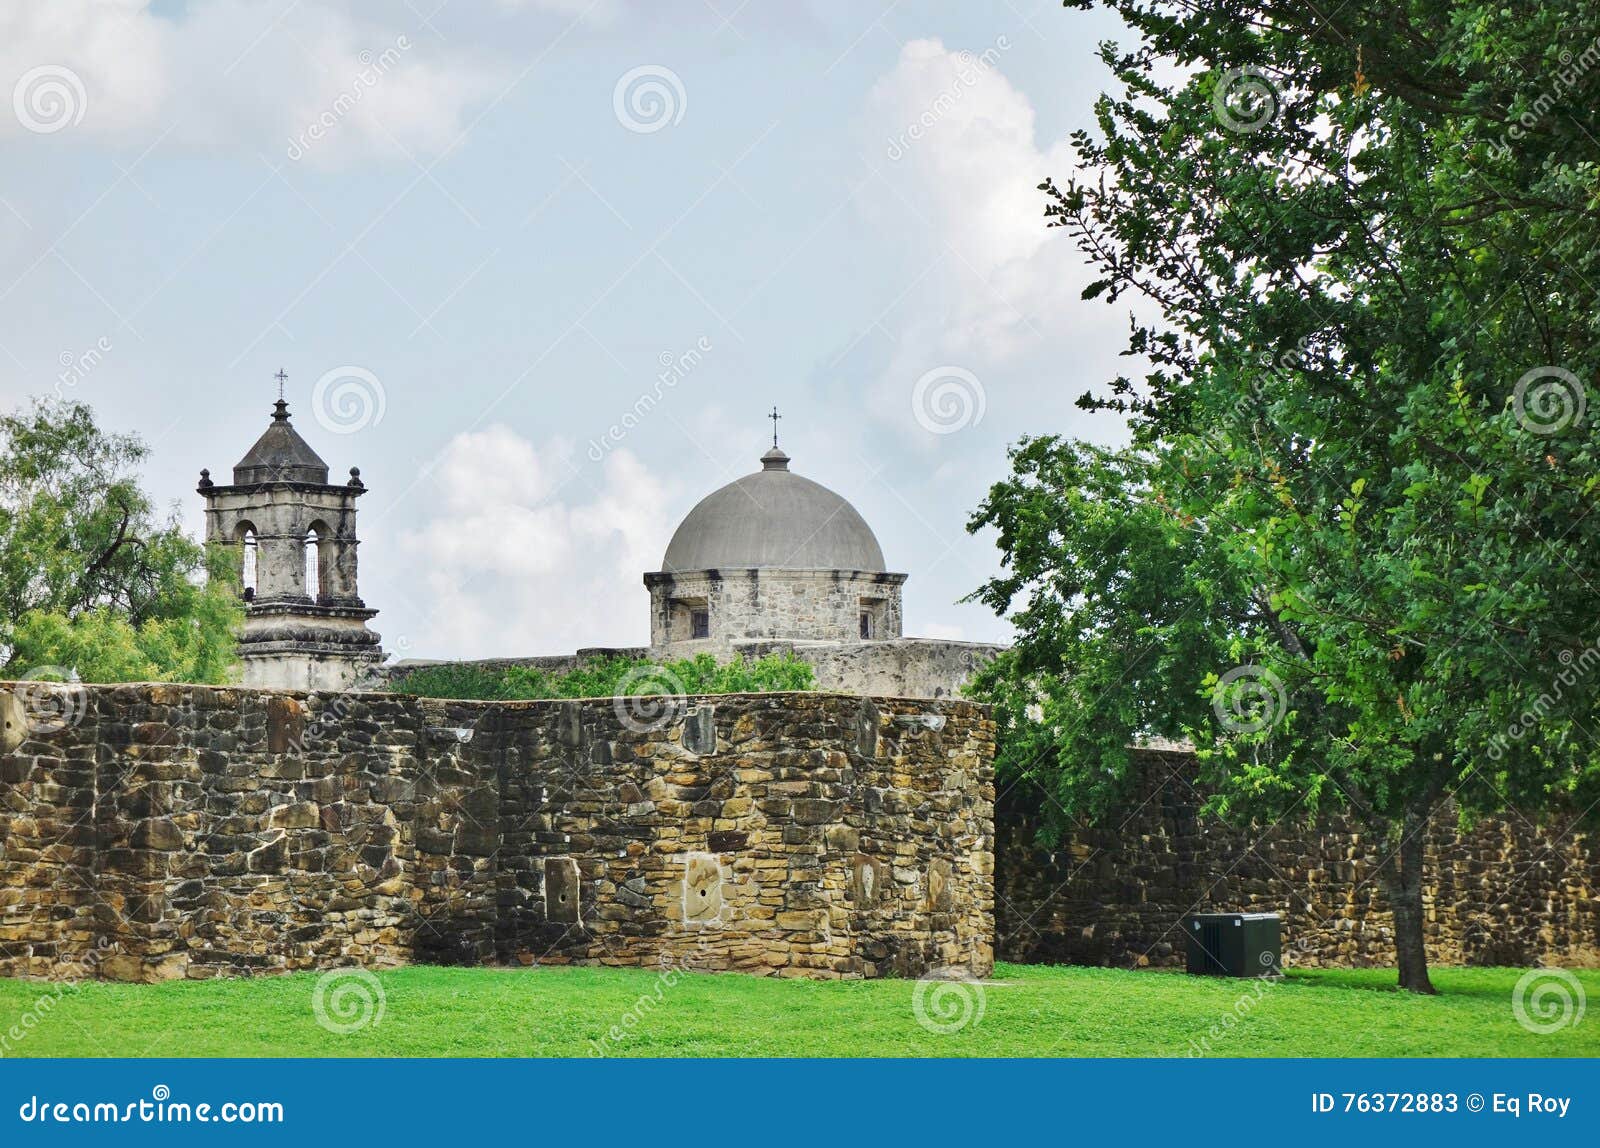 La misión San Jose y San Miguel de Aguayo en San Antonio, Tejas. SAN ANTONIO, TX - fundado en 1720, la misión católica San Jose y San Miguel de Aguayo es parte del San Antonio Missions National Historical Park, un sitio del patrimonio mundial de la UNESCO